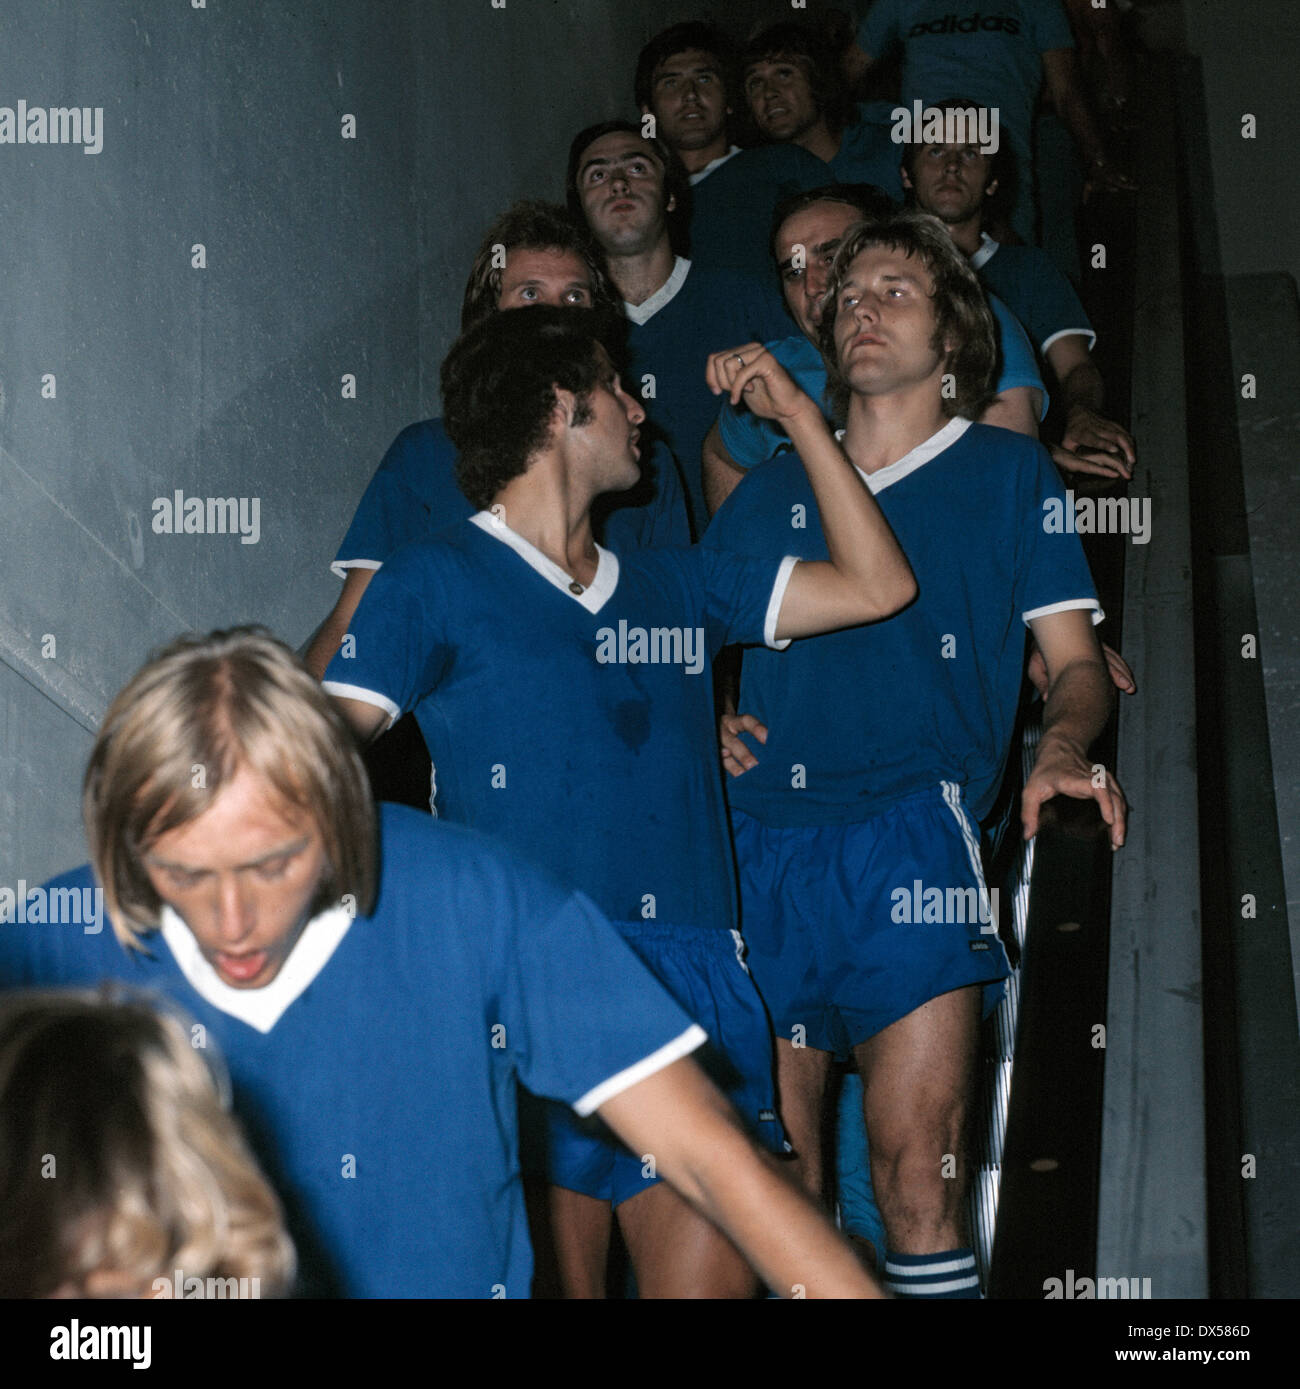 Football, Bundesliga, 1973/1974, Park Stadium, le FC Schalke 04 Gelsenkirchen contre Bochum 3:1, Schalke player lecteur d'un escalier mobile pour le terrain de jeu, f.l.t.r. Klaus Scheer, Klaus Beverungen, Juergen Sobieray Banque D'Images